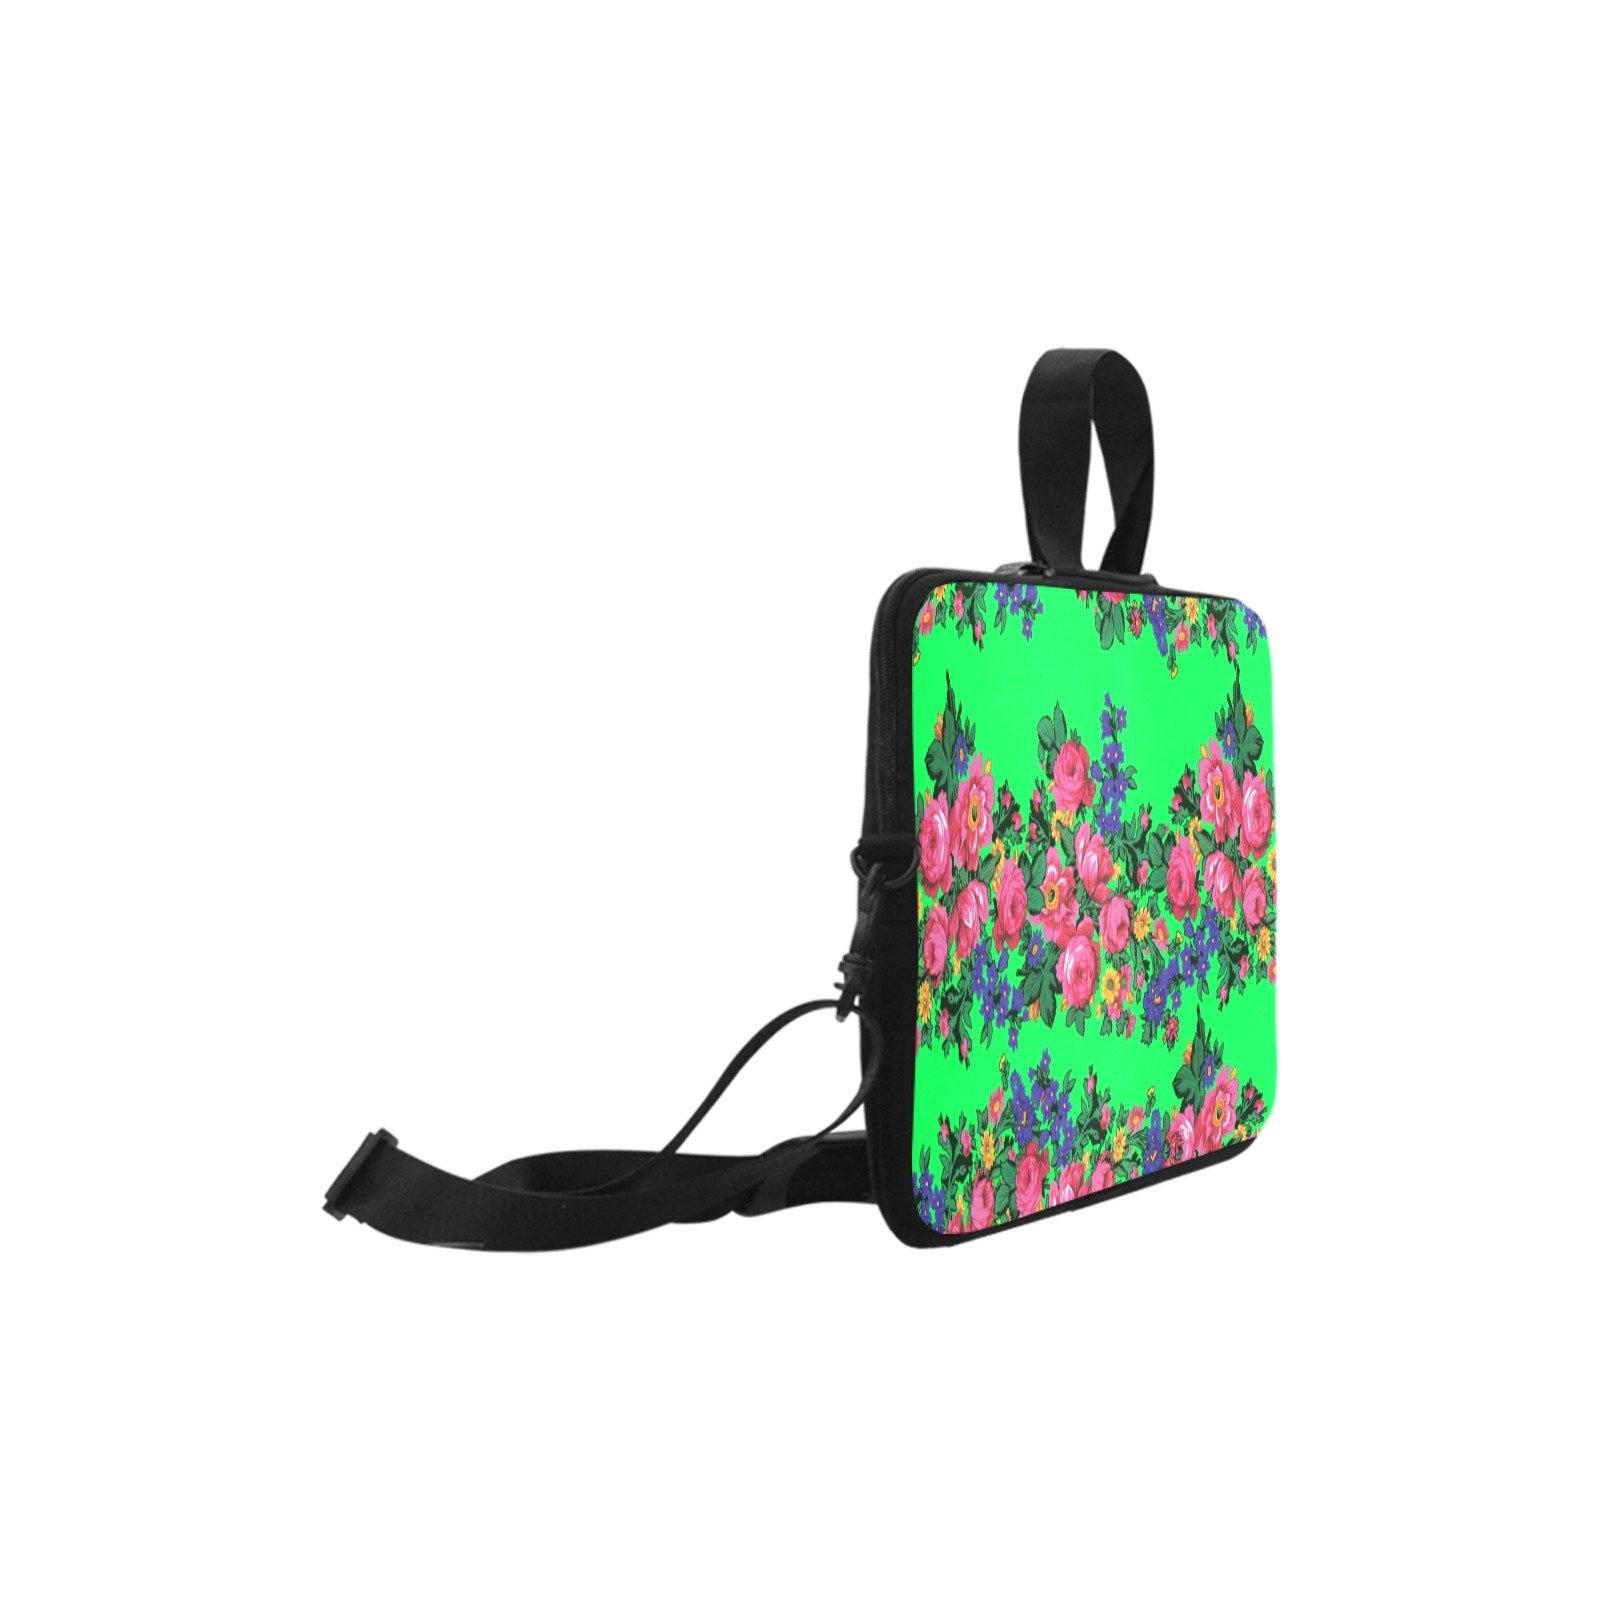 Kokum's Revenge Green Laptop Handbags 10" bag e-joyer 